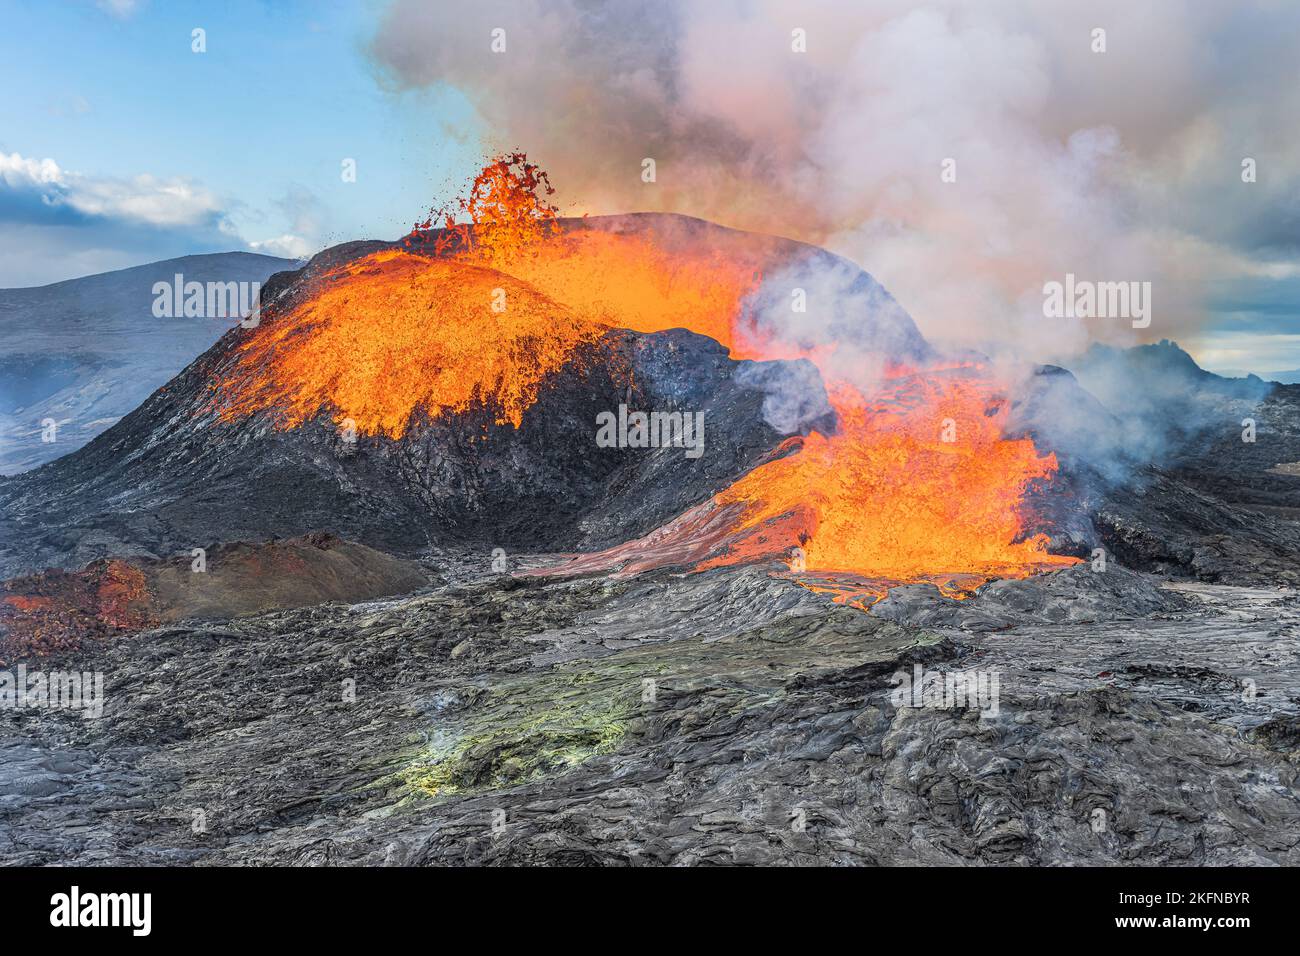 Starker Lavafluss aus einem aktiven Vulkan auf der Rekjanes-Halbinsel in Island. Vulkankrater am Tag mit Sonnenschein. Kaltes Magma um die Krater. Stockfoto